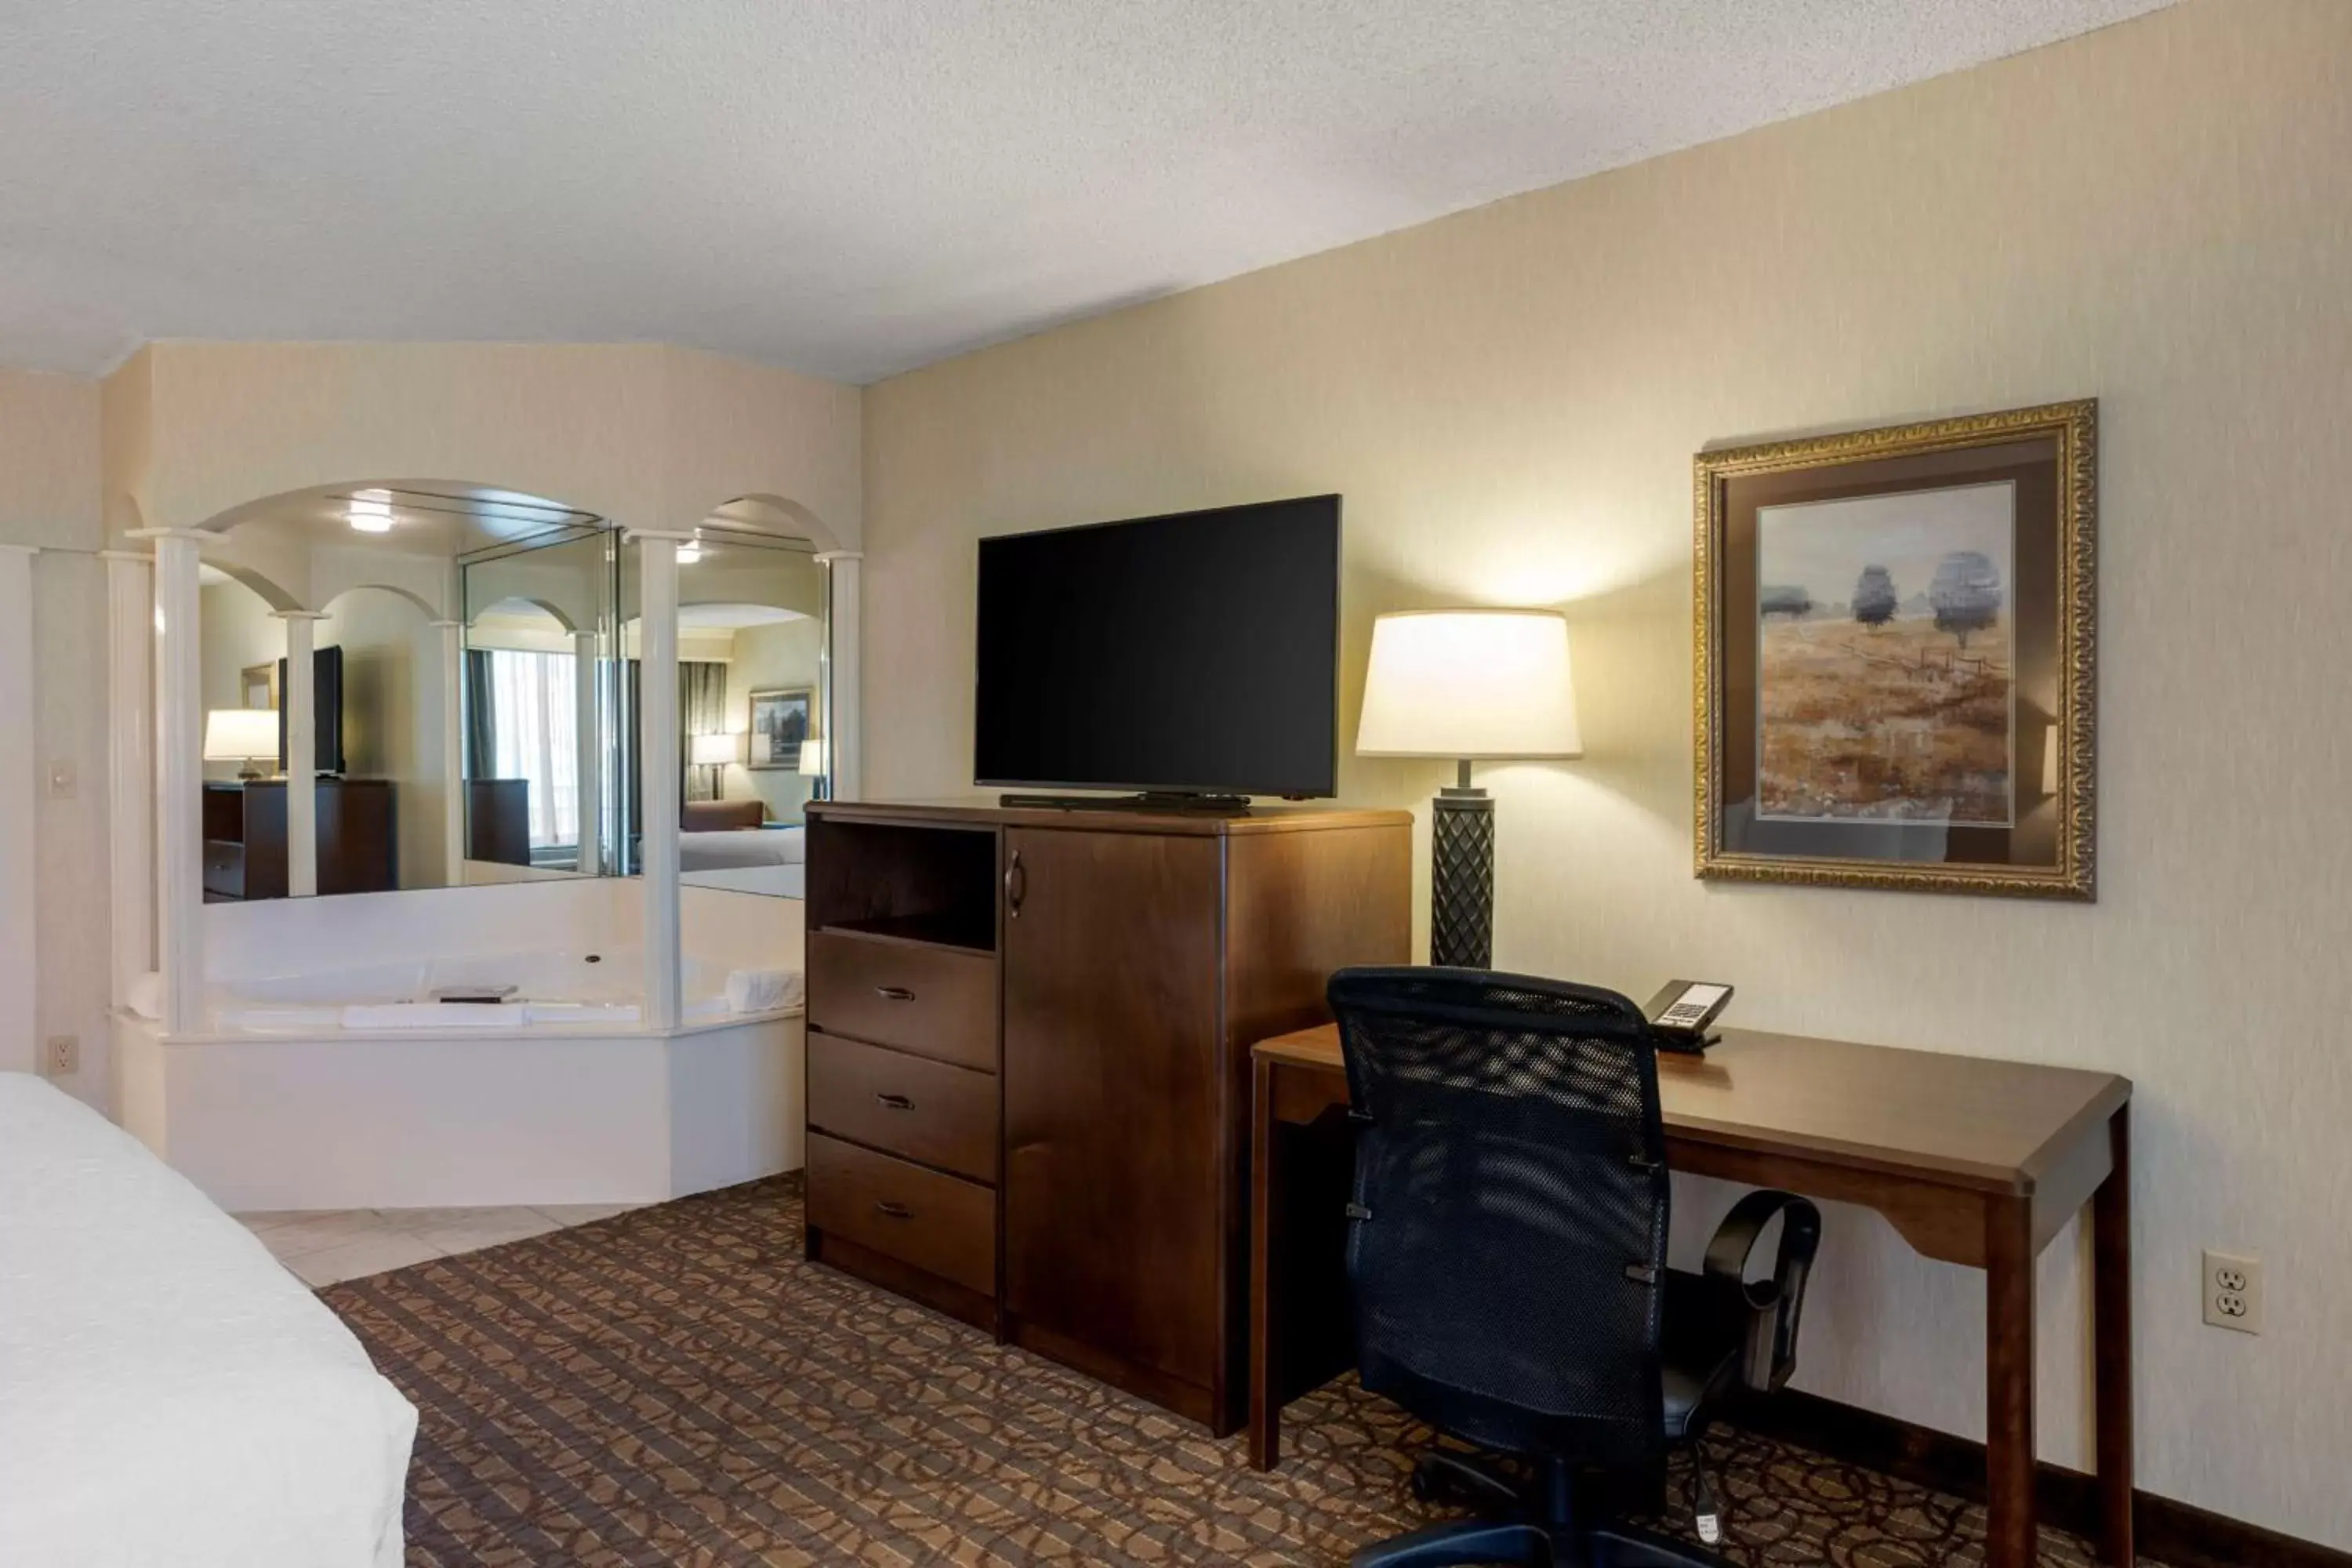 Bedroom, TV/Entertainment Center in Best Western Inn of the Ozarks